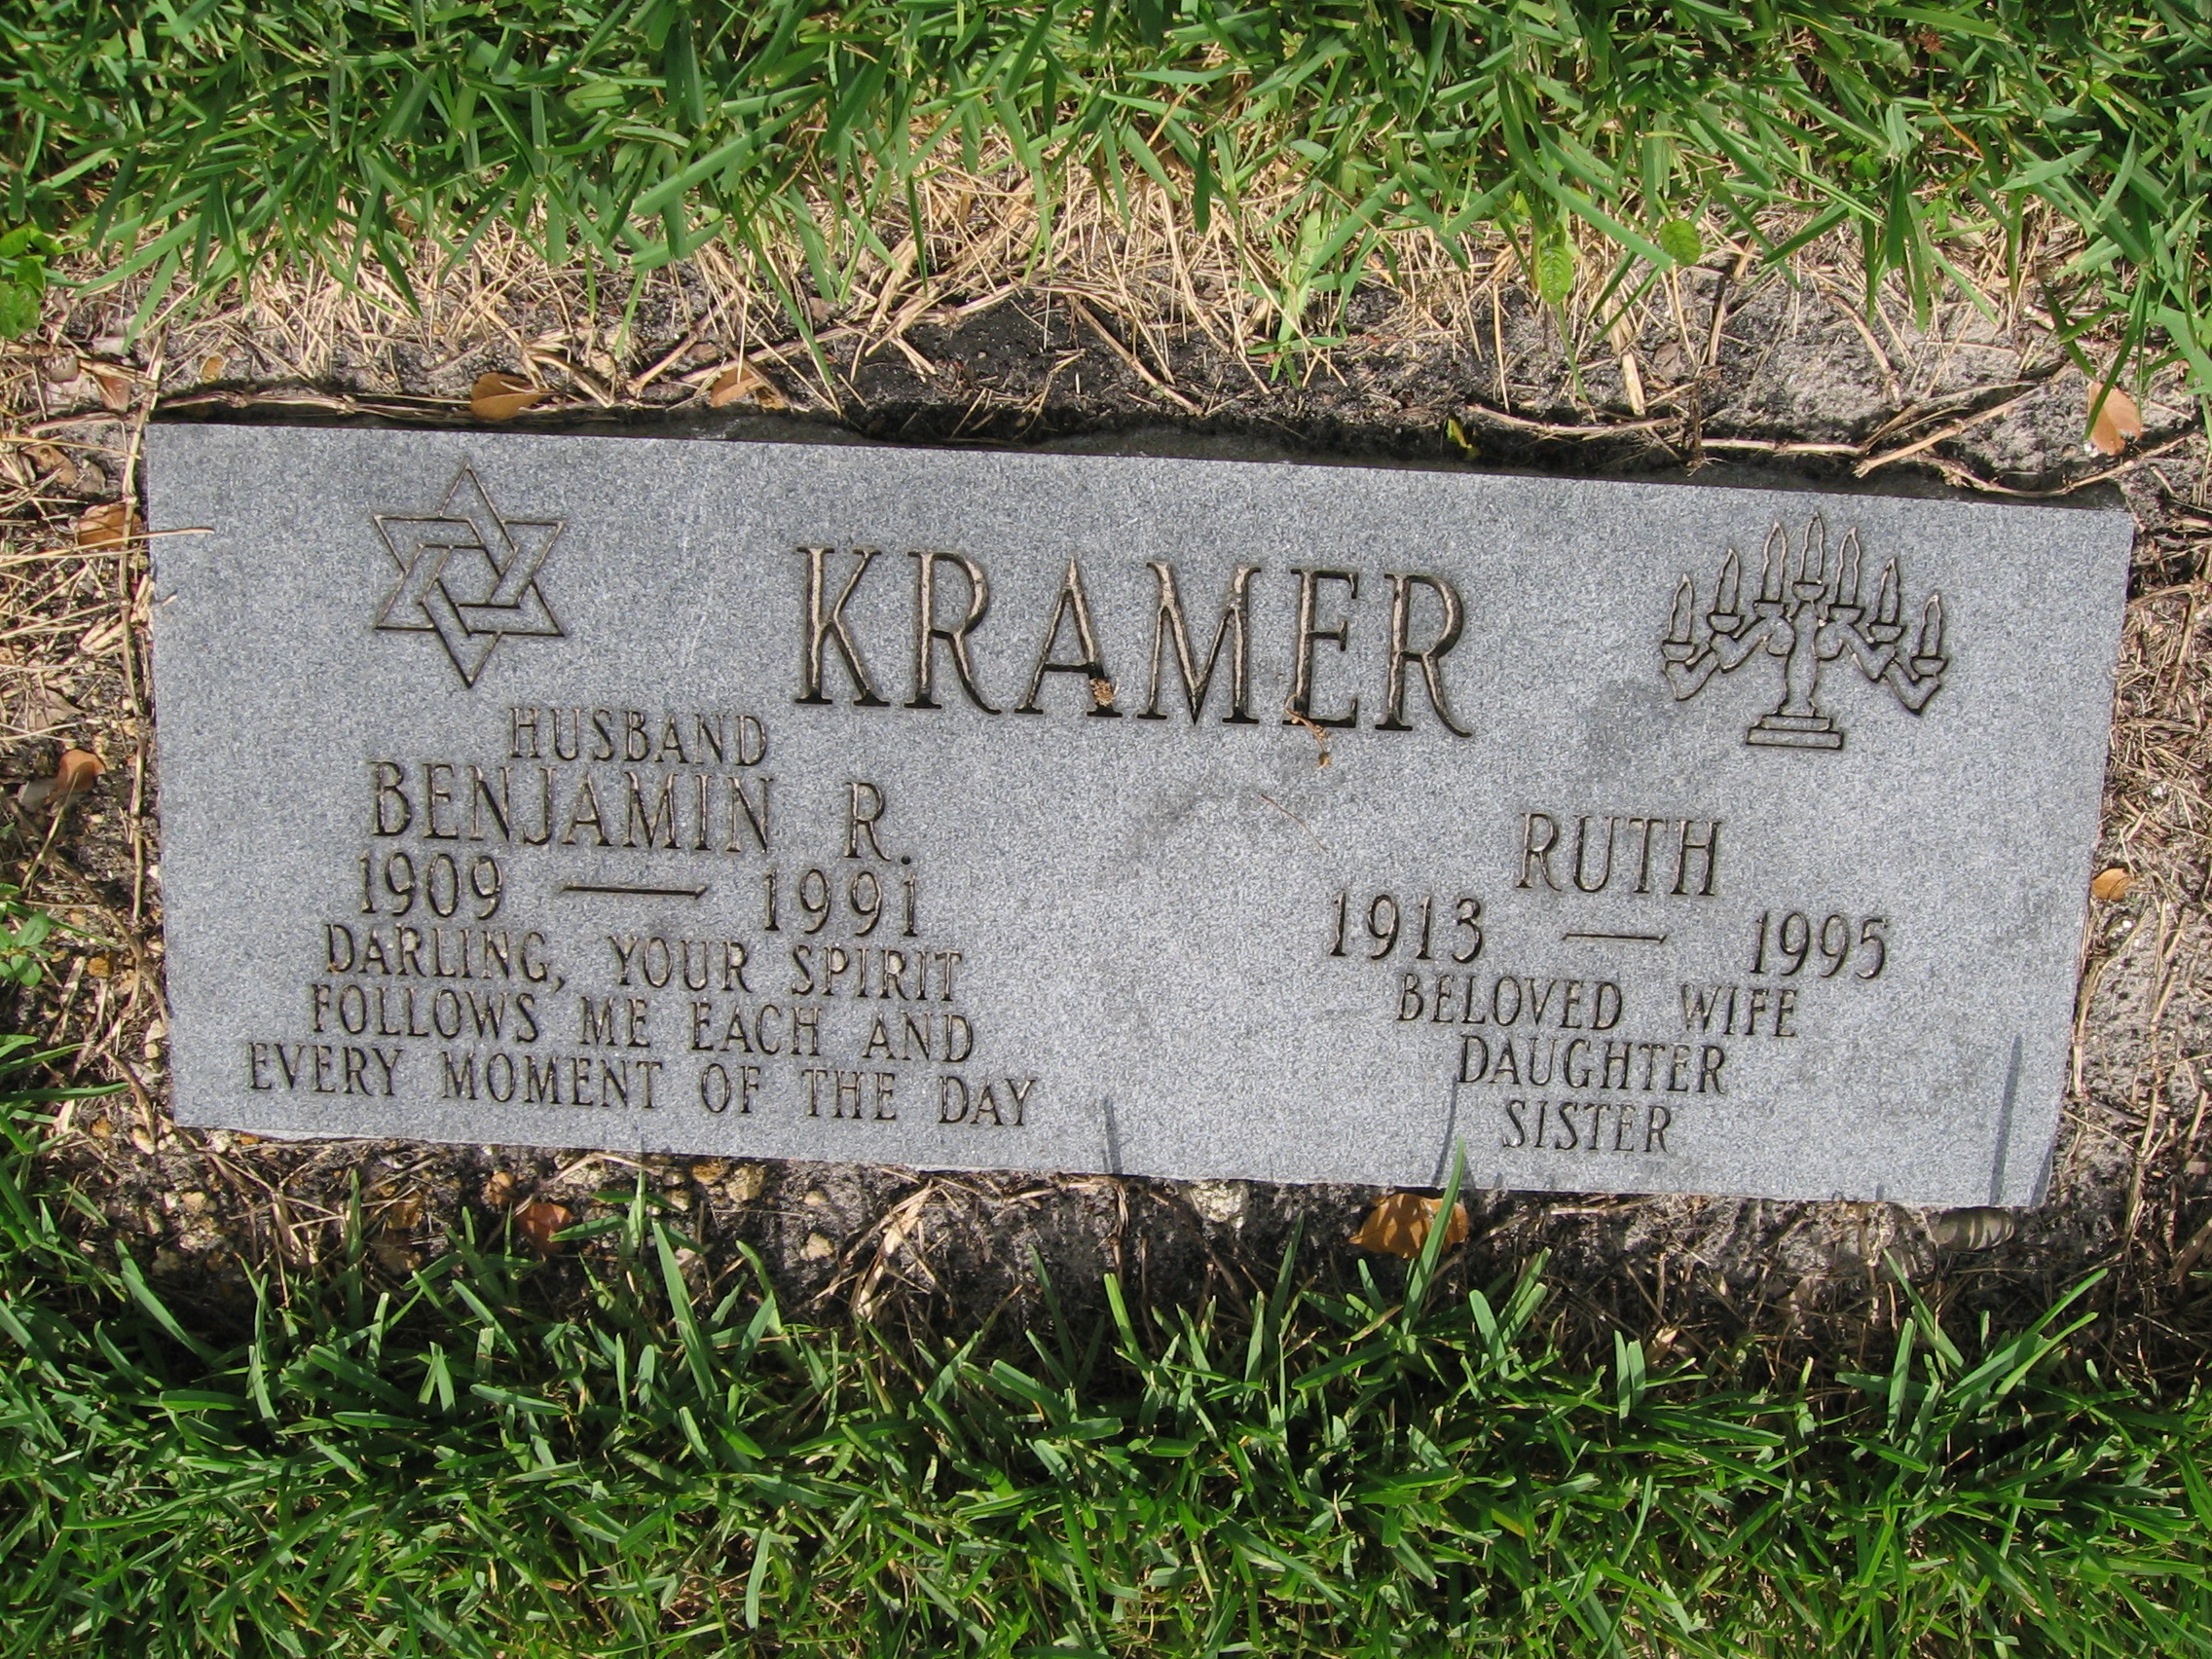 Benjamin R Kramer